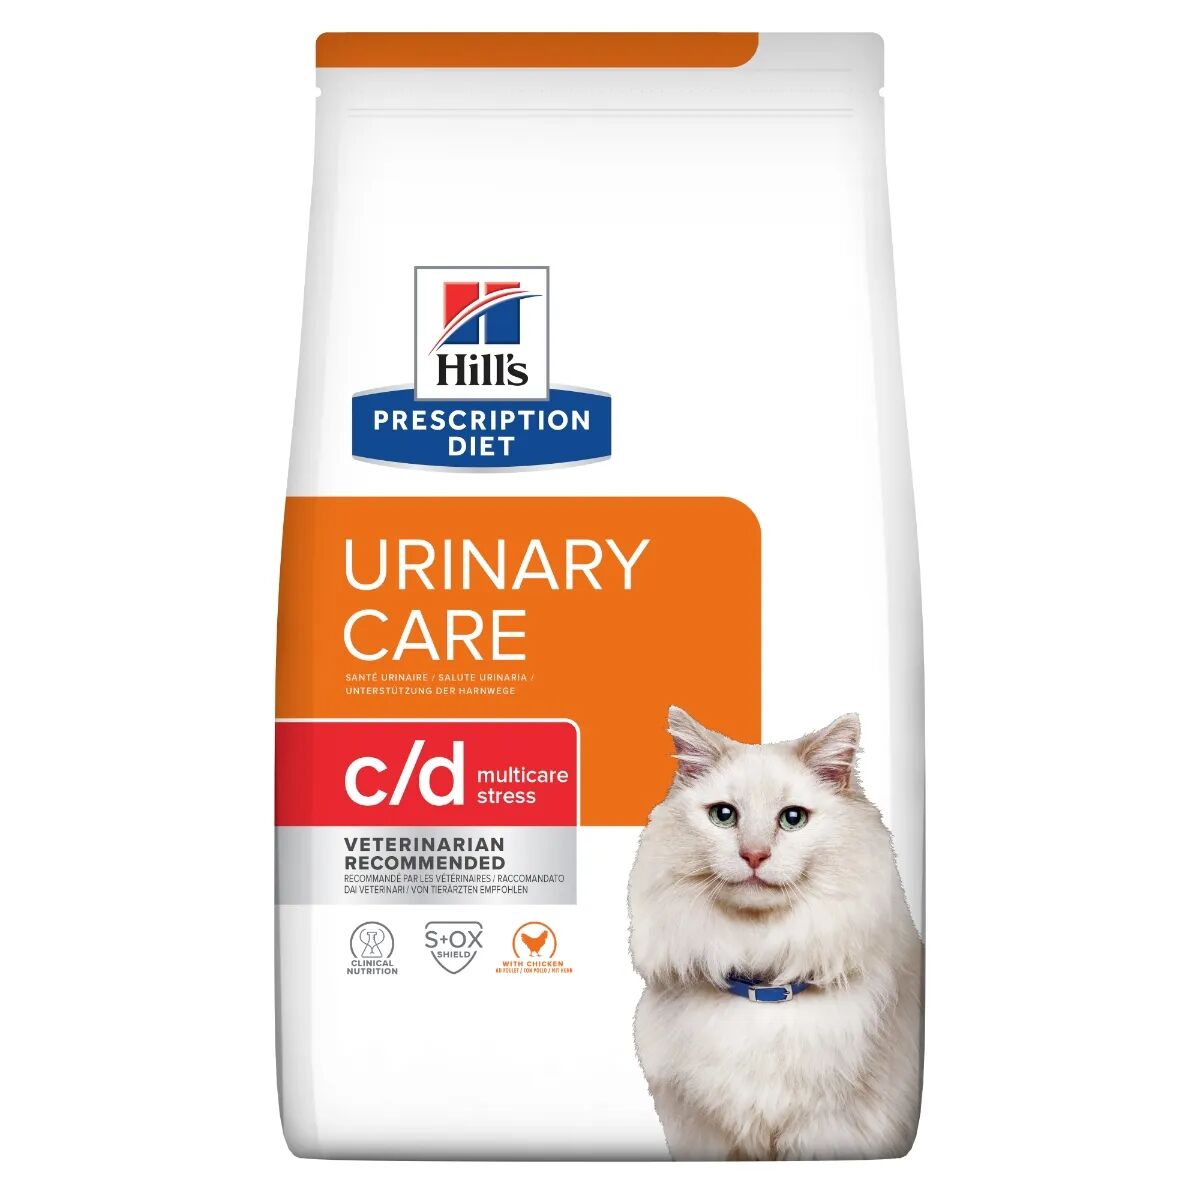 hills hill's prescription diet c/d urinary care multicare stress alimento secco per gatti 400g